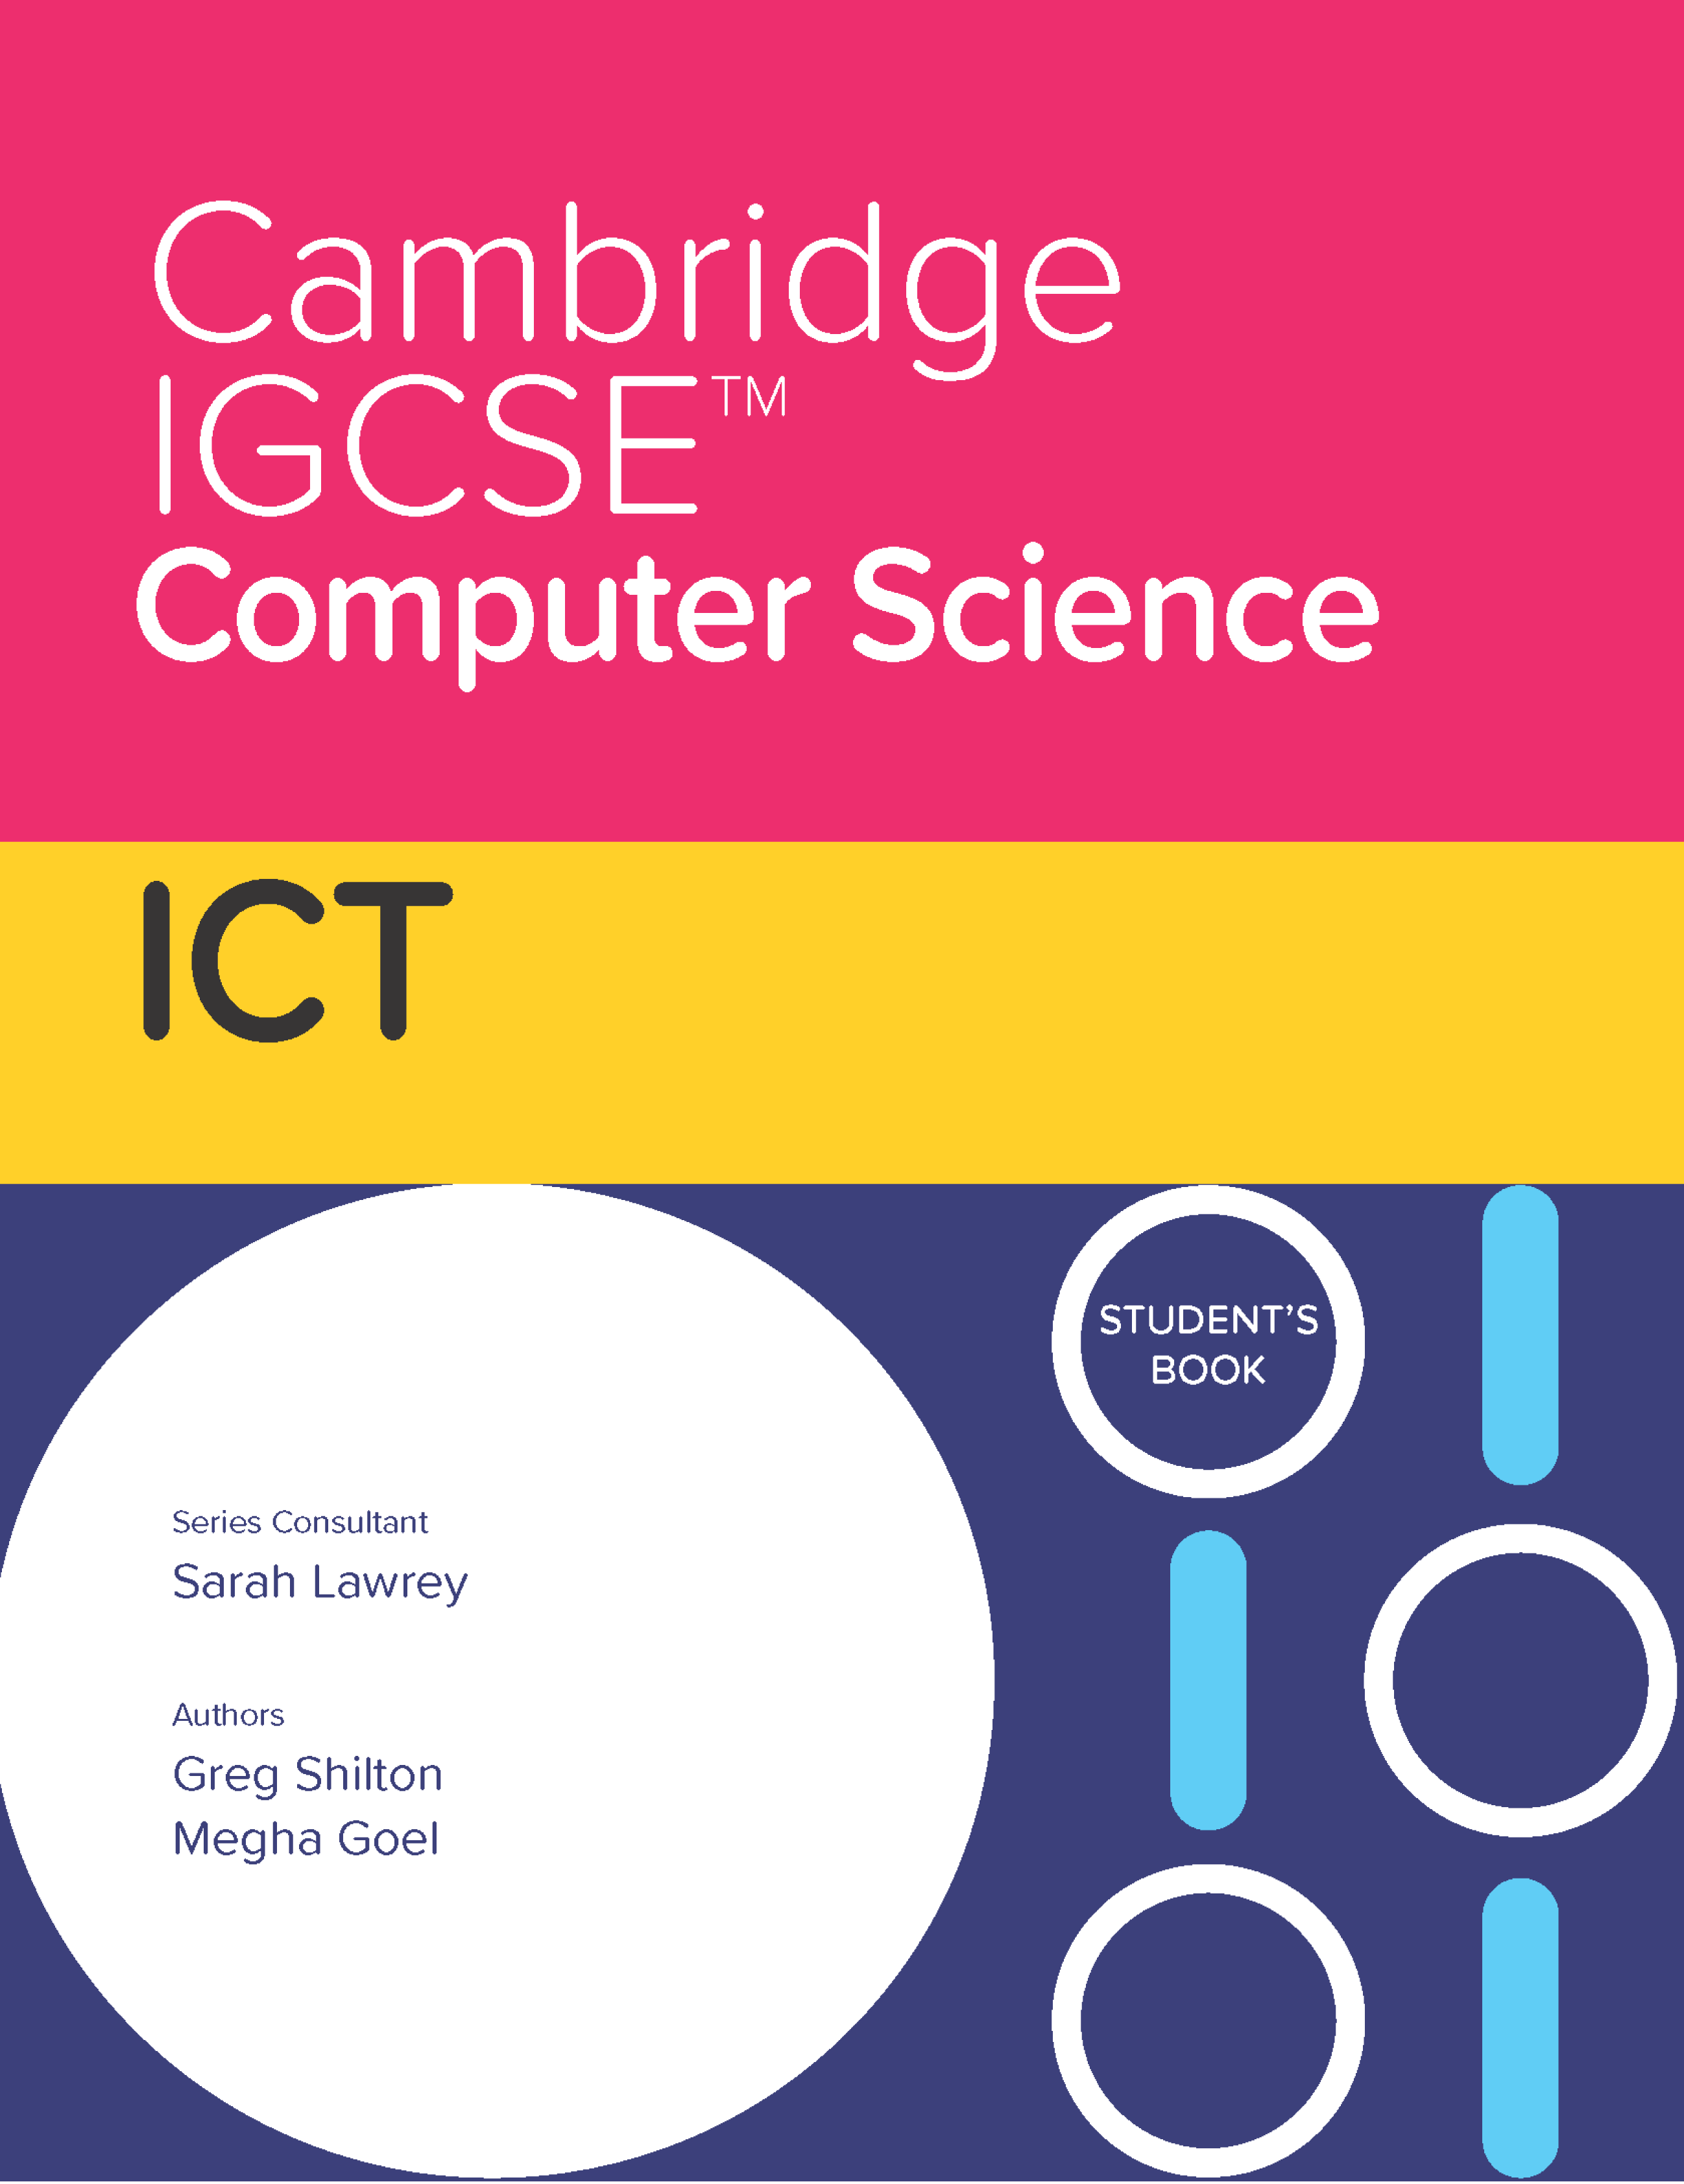 CS_ICT-icon